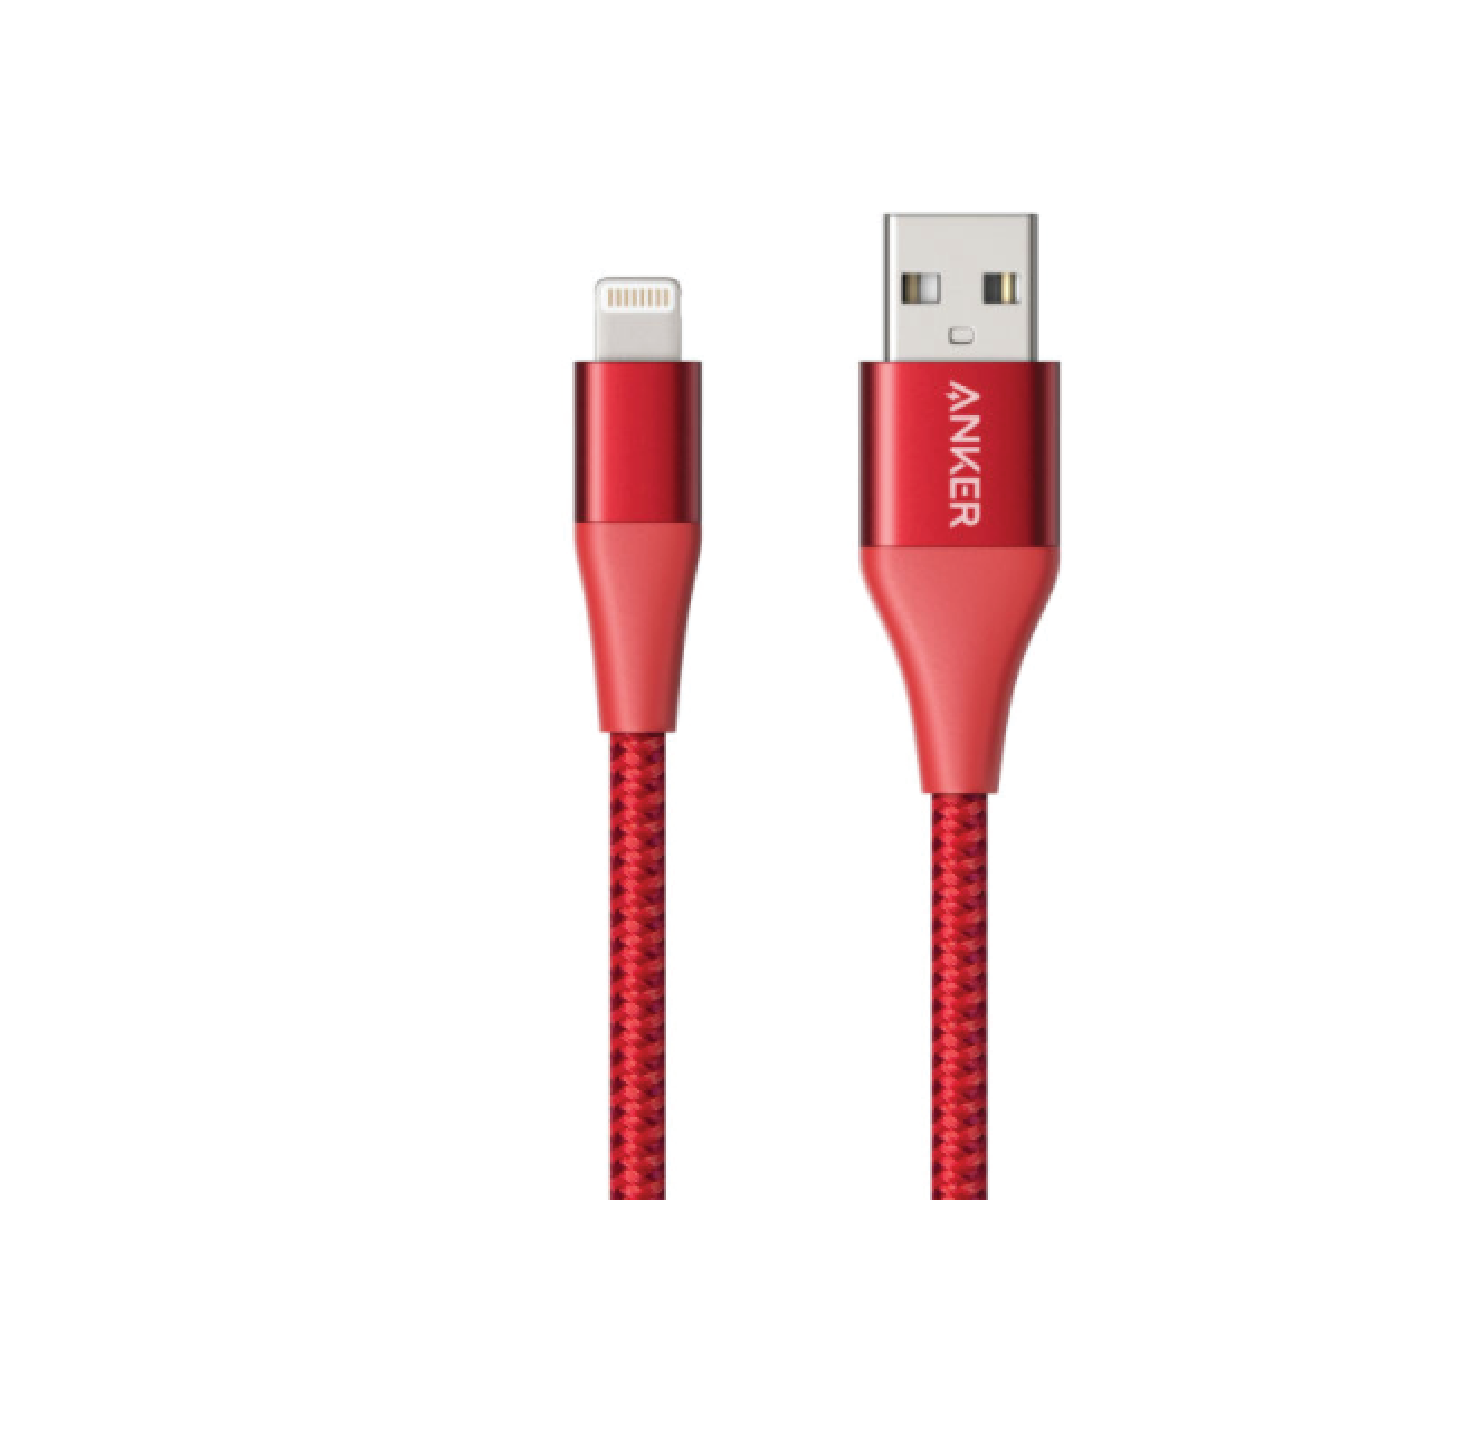 کابل تبدیل USB به لایتنینگ انکر مدل A8453 PowerLine II Plus طول 1.8 متر thumb 134